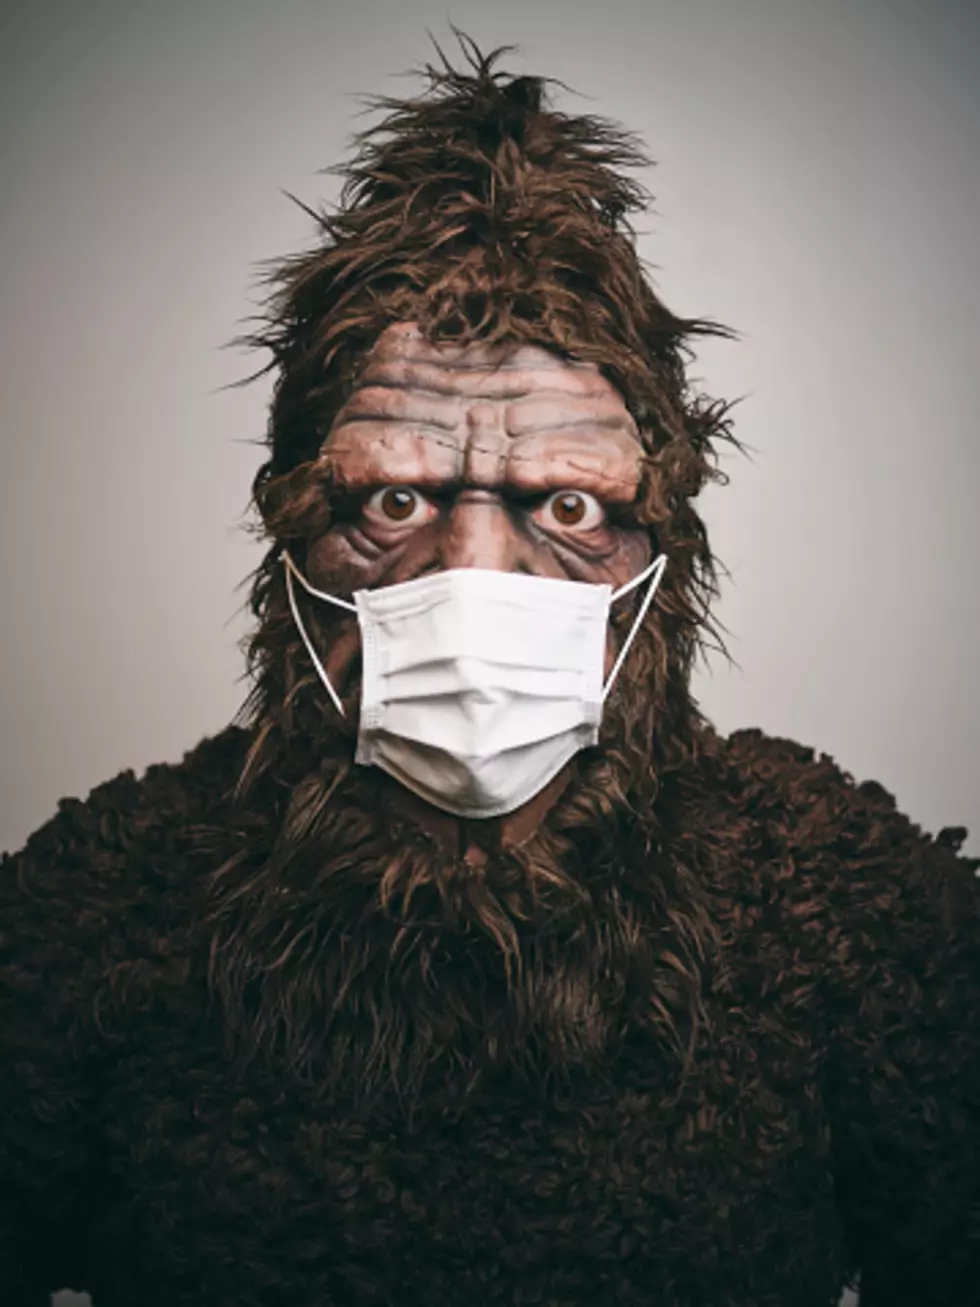 Wyoming Bigfoot “I Hate Wearing This Mask”